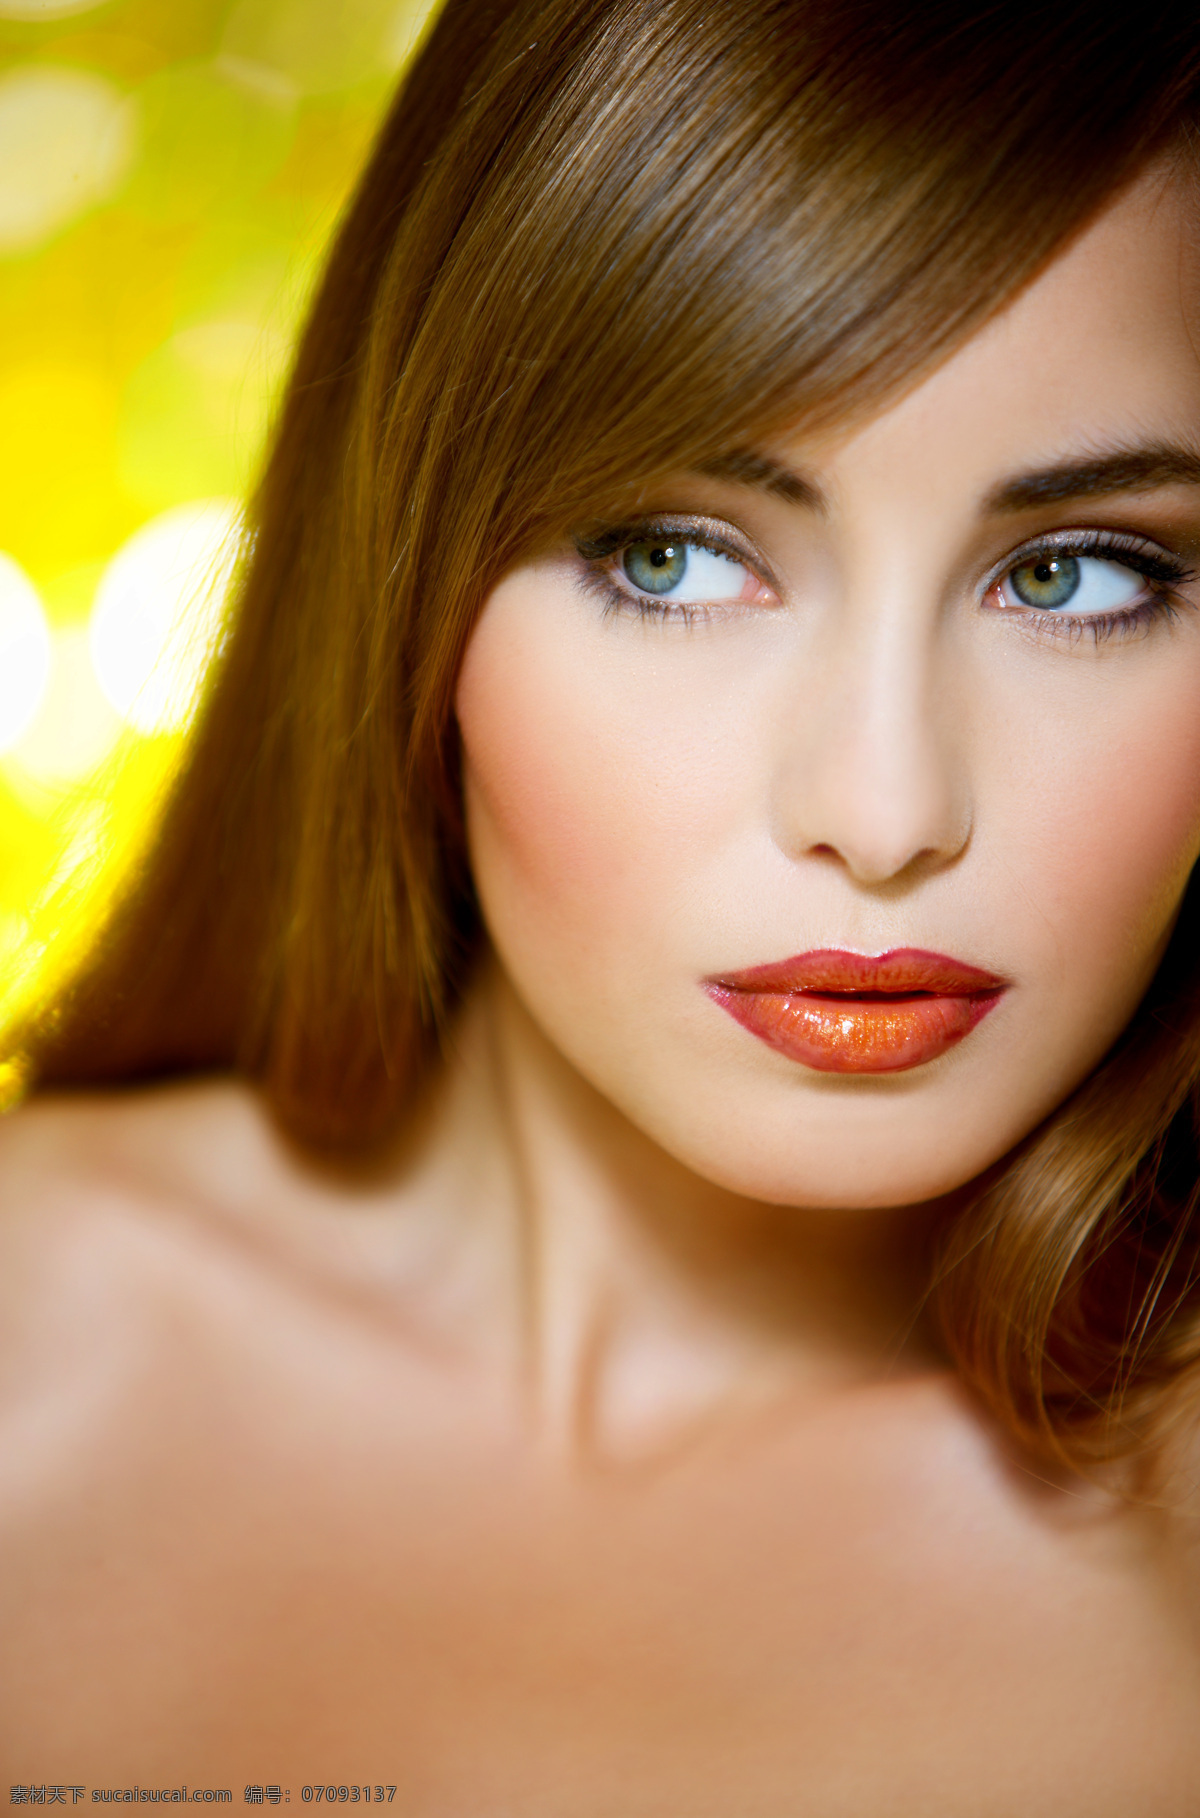 黄色 长发 白皙 外国 女人 人物 外国女人 美女 性感 化妆 模特 美容 美体 美白 肌肤 脸部特写 红唇 高清图片 美女图片 人物图片